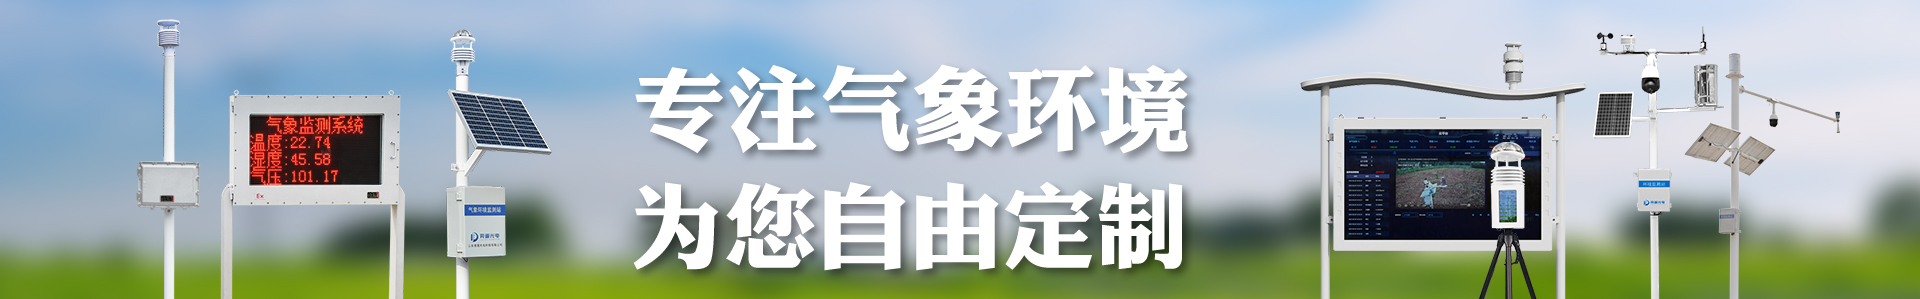 负氧离子监测站-生态环境监测站-负氧离子检测仪-自动气象站-小型气象站-防爆气象站-光伏气象站-完美体育·(中国)官方网站-365WM SPORTS